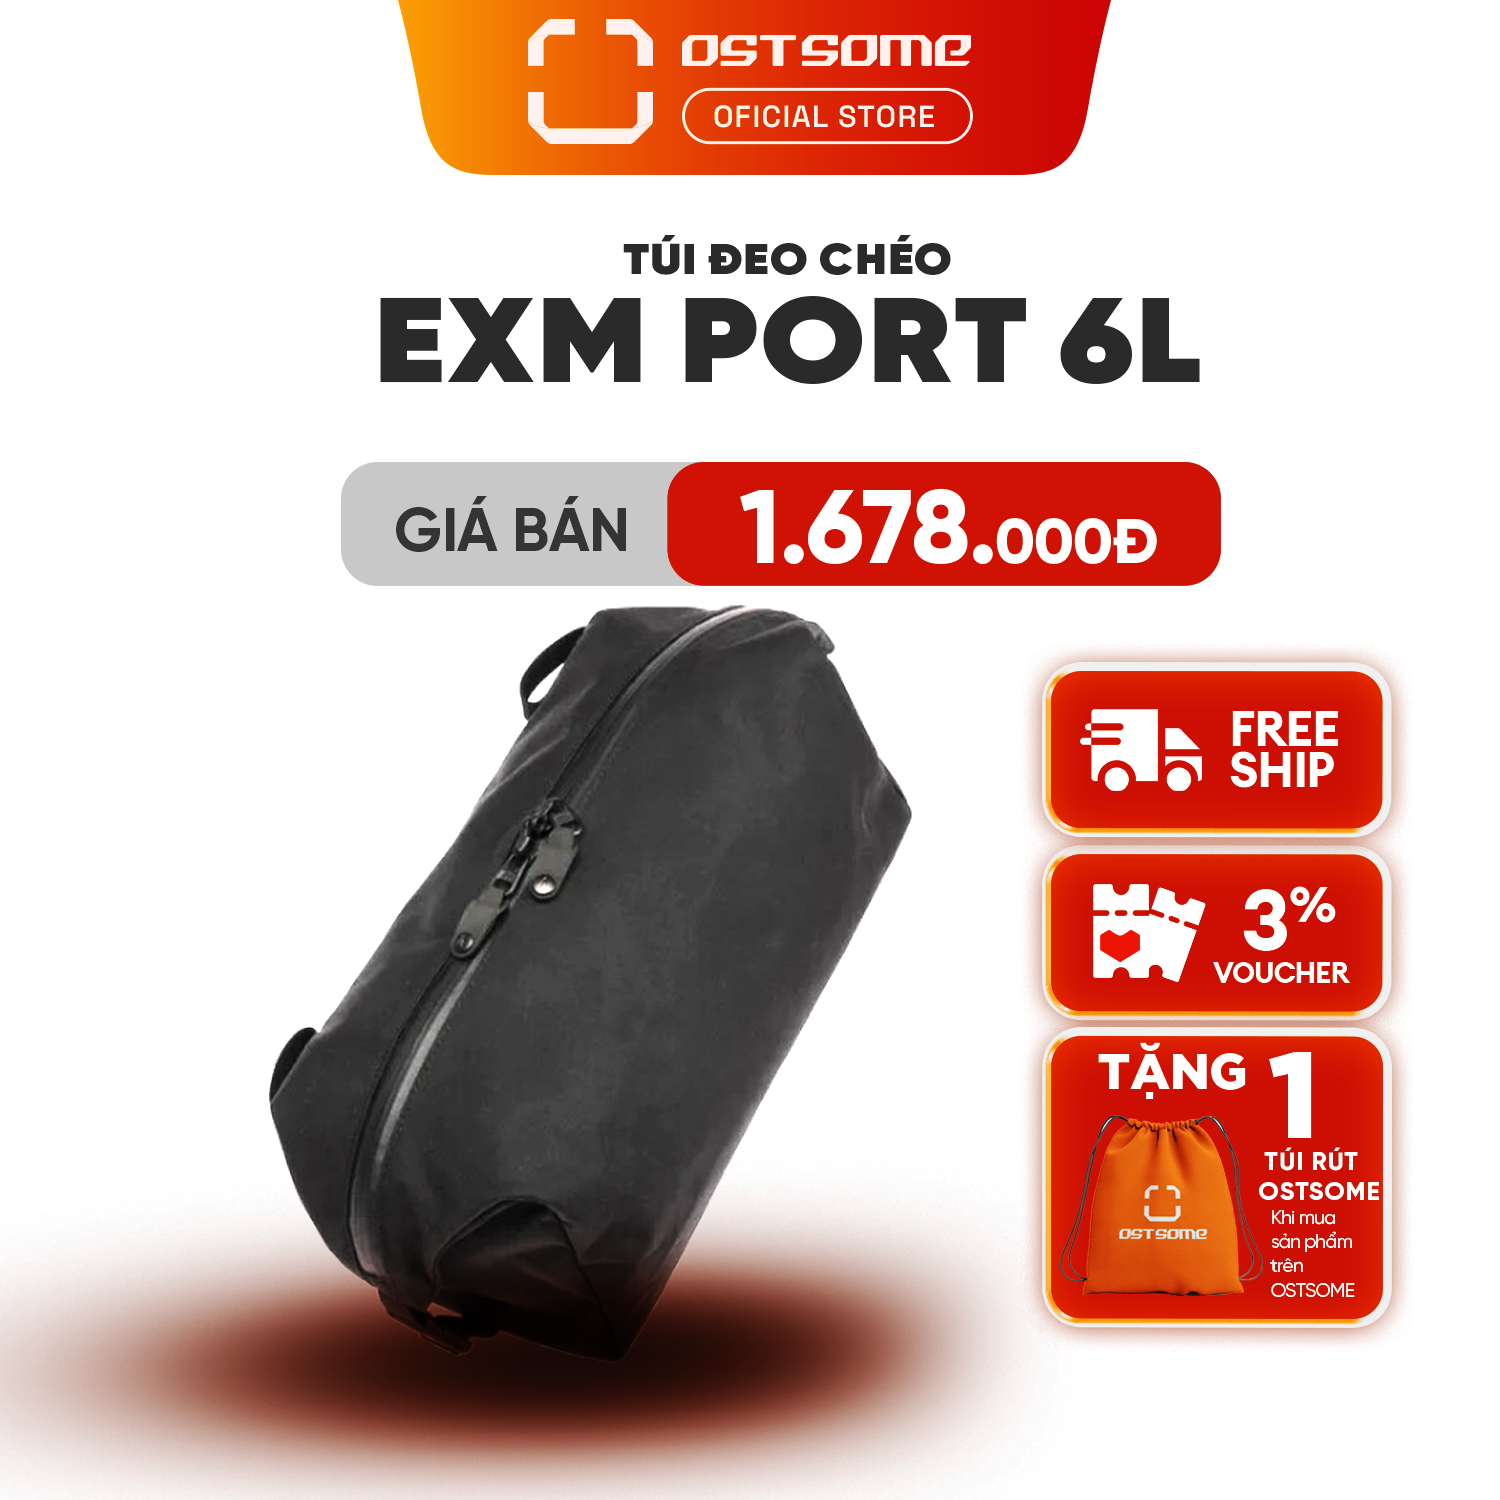 EXM Port 6L bag